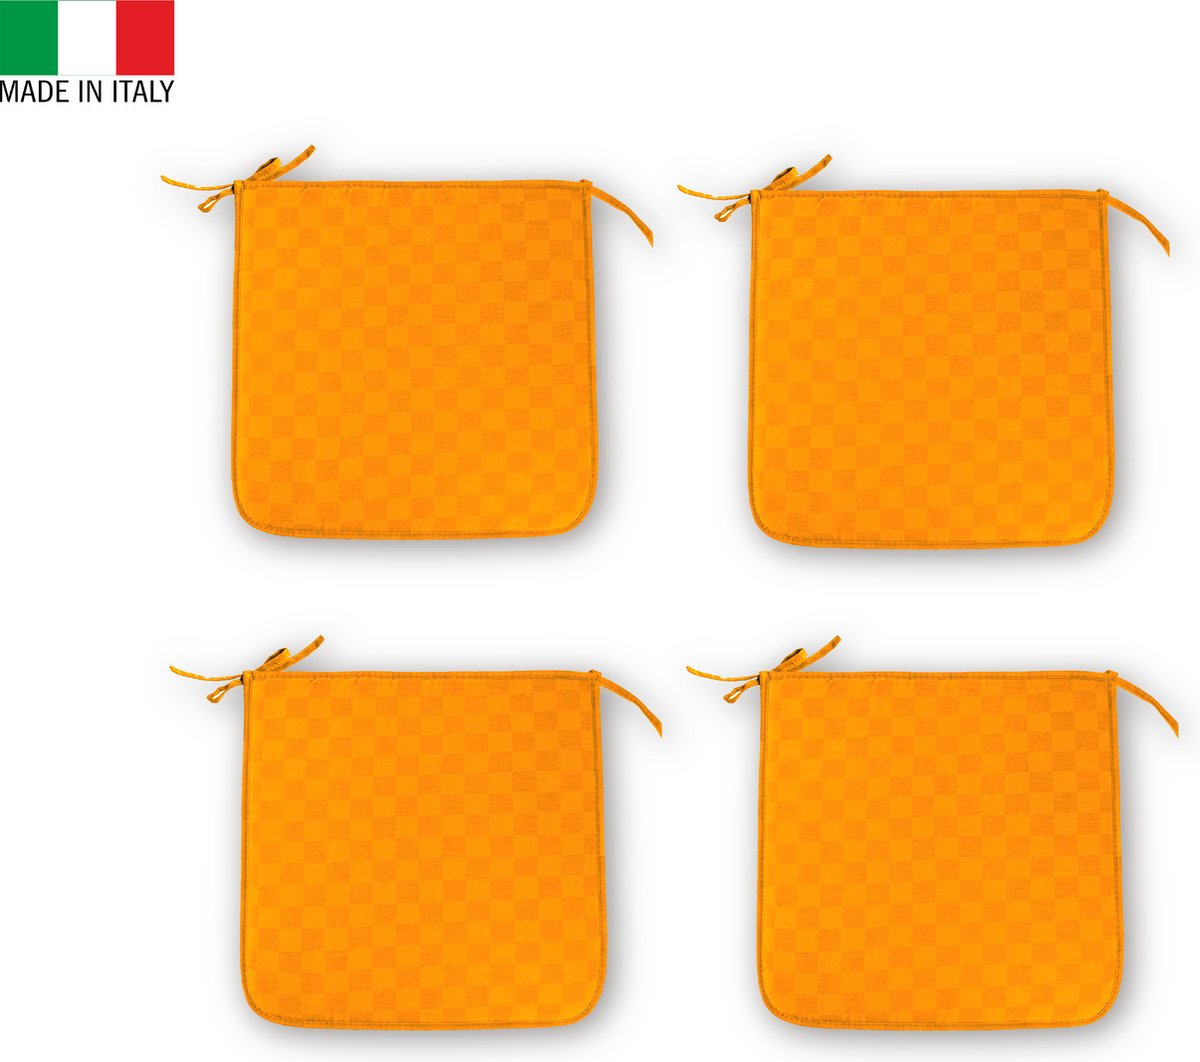 Zitkussen Set 4x - Geschikt voor Tuin - Tuinstoelkussen - Oranje - Made in Italy - Stoelkussen 40x40 cm - Met Vlekbestendige Behandeling - Zitkussens met lint – Kussens voor Stoelen - Chairpad